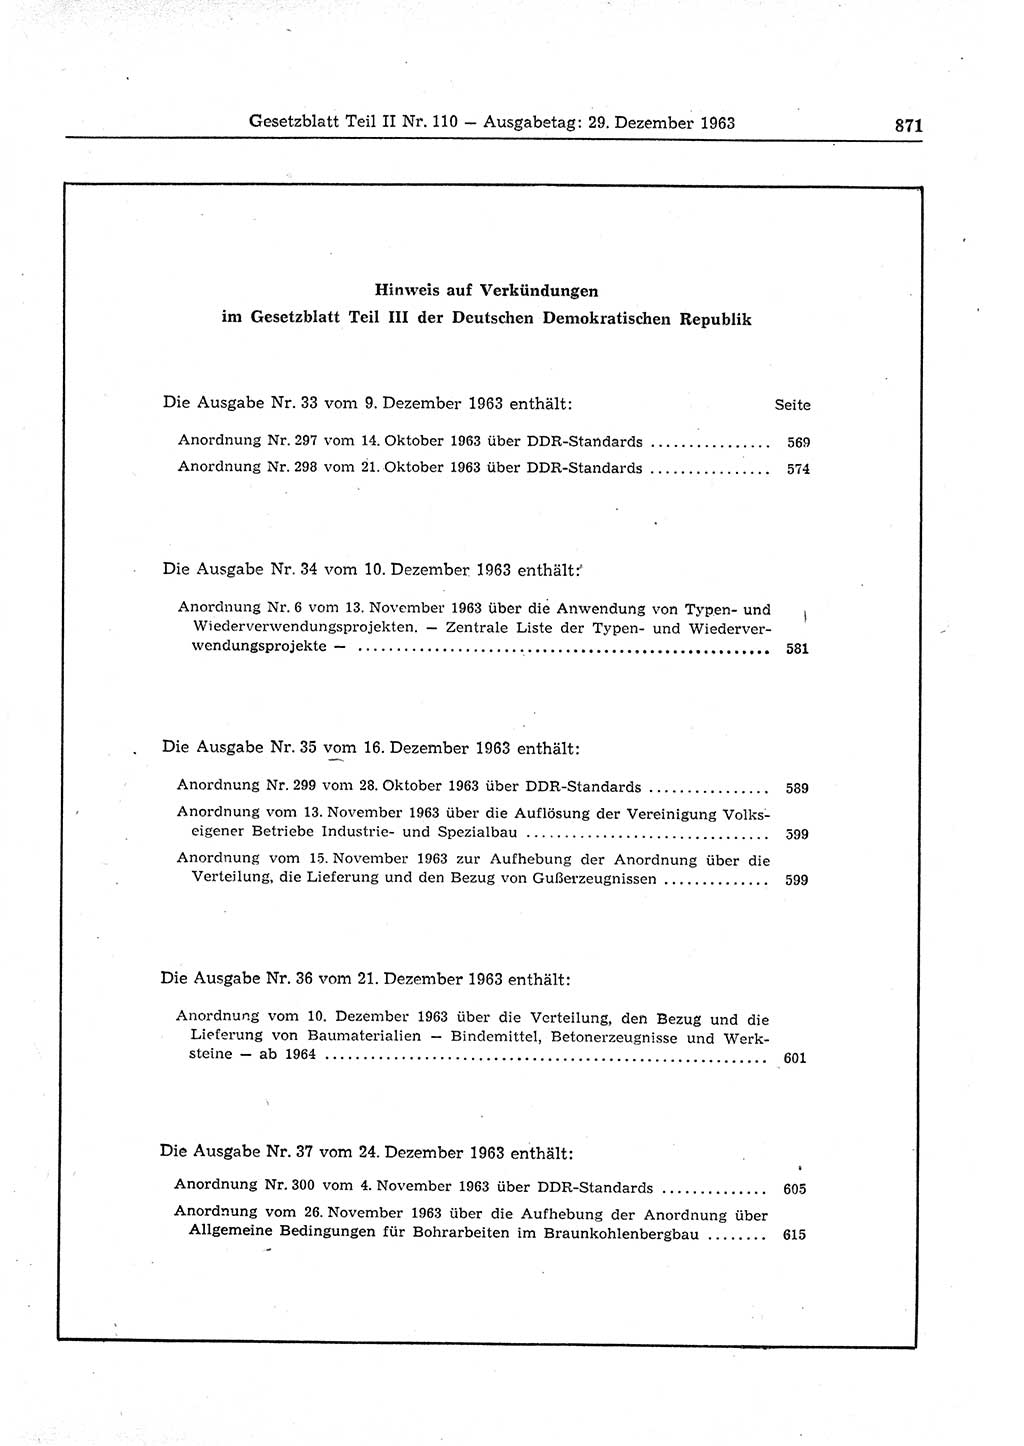 Gesetzblatt (GBl.) der Deutschen Demokratischen Republik (DDR) Teil ⅠⅠ 1963, Seite 871 (GBl. DDR ⅠⅠ 1963, S. 871)